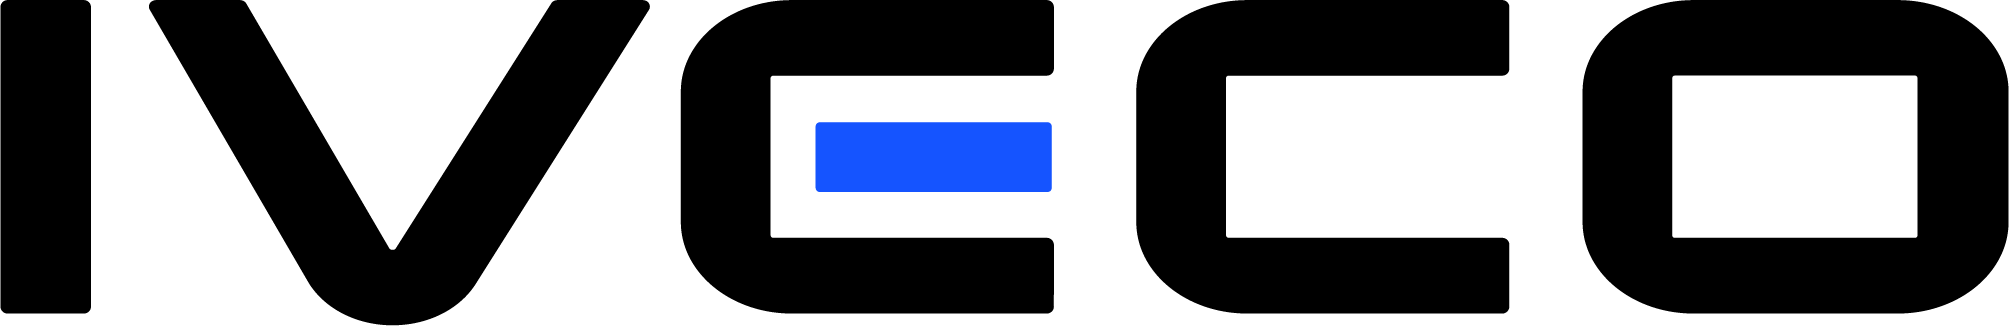 IVECO_Logo_RGB_web